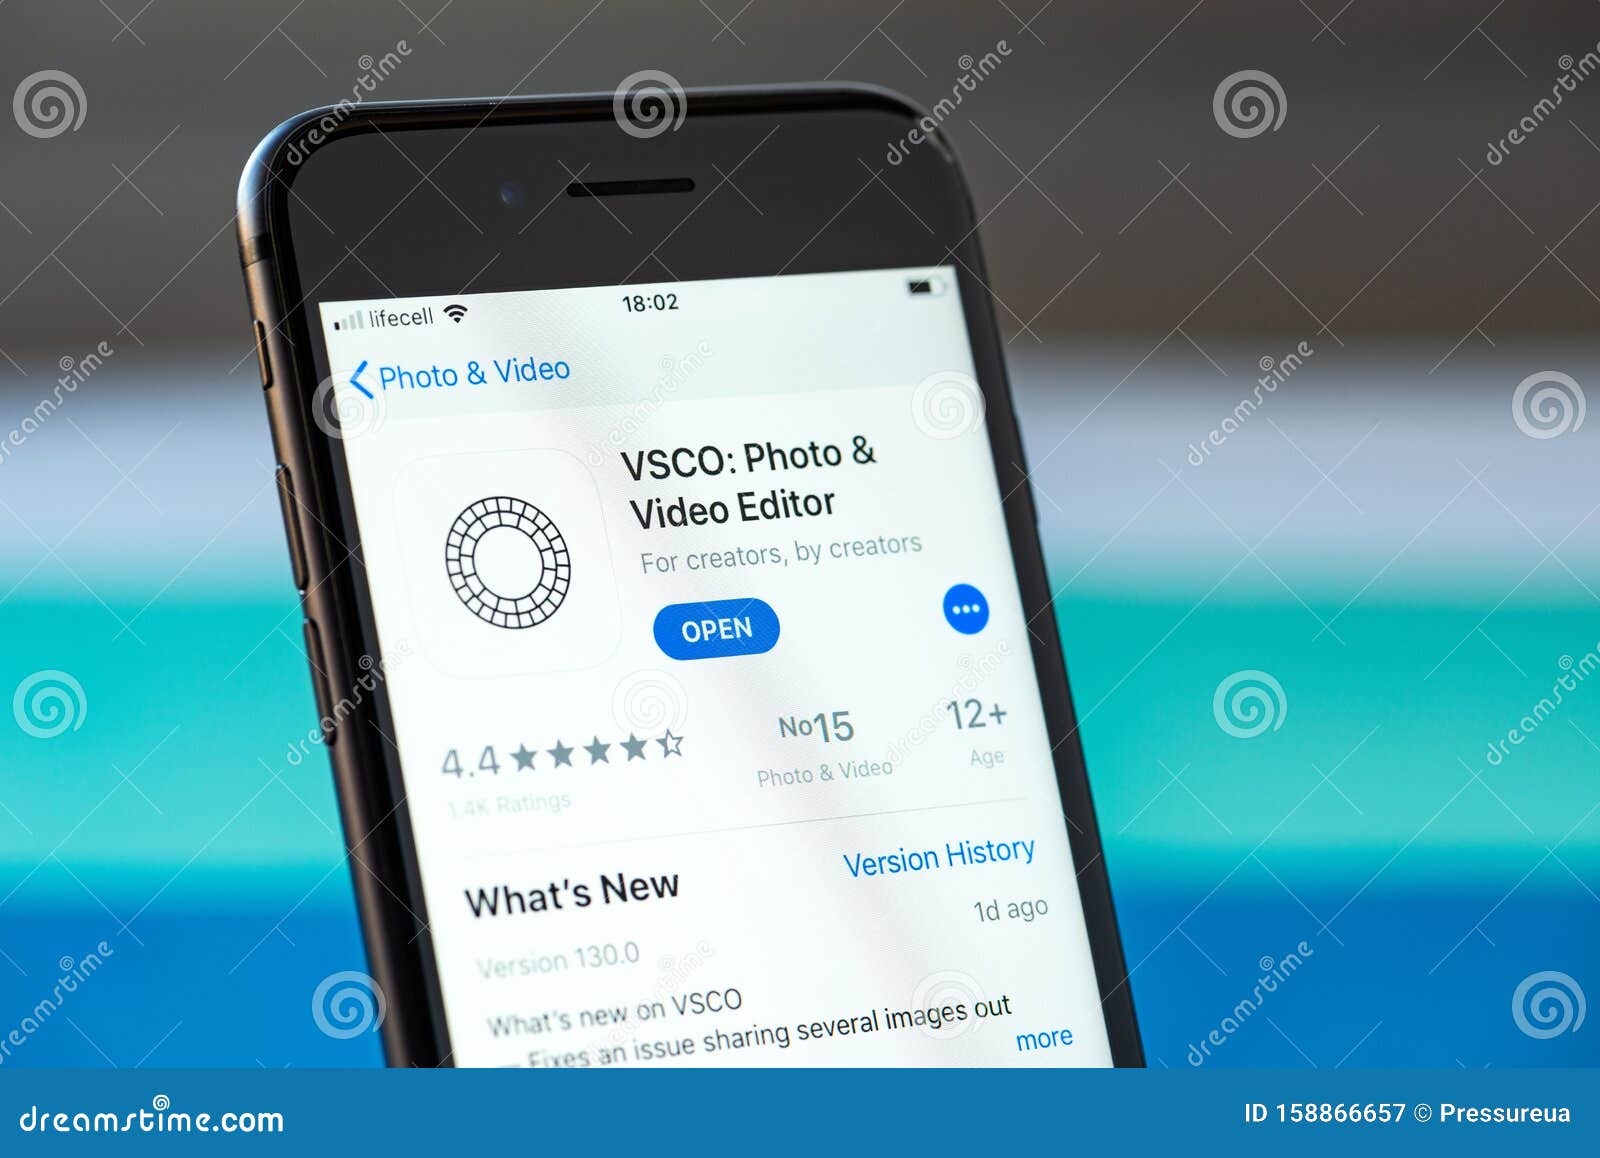 vsco app for iphone